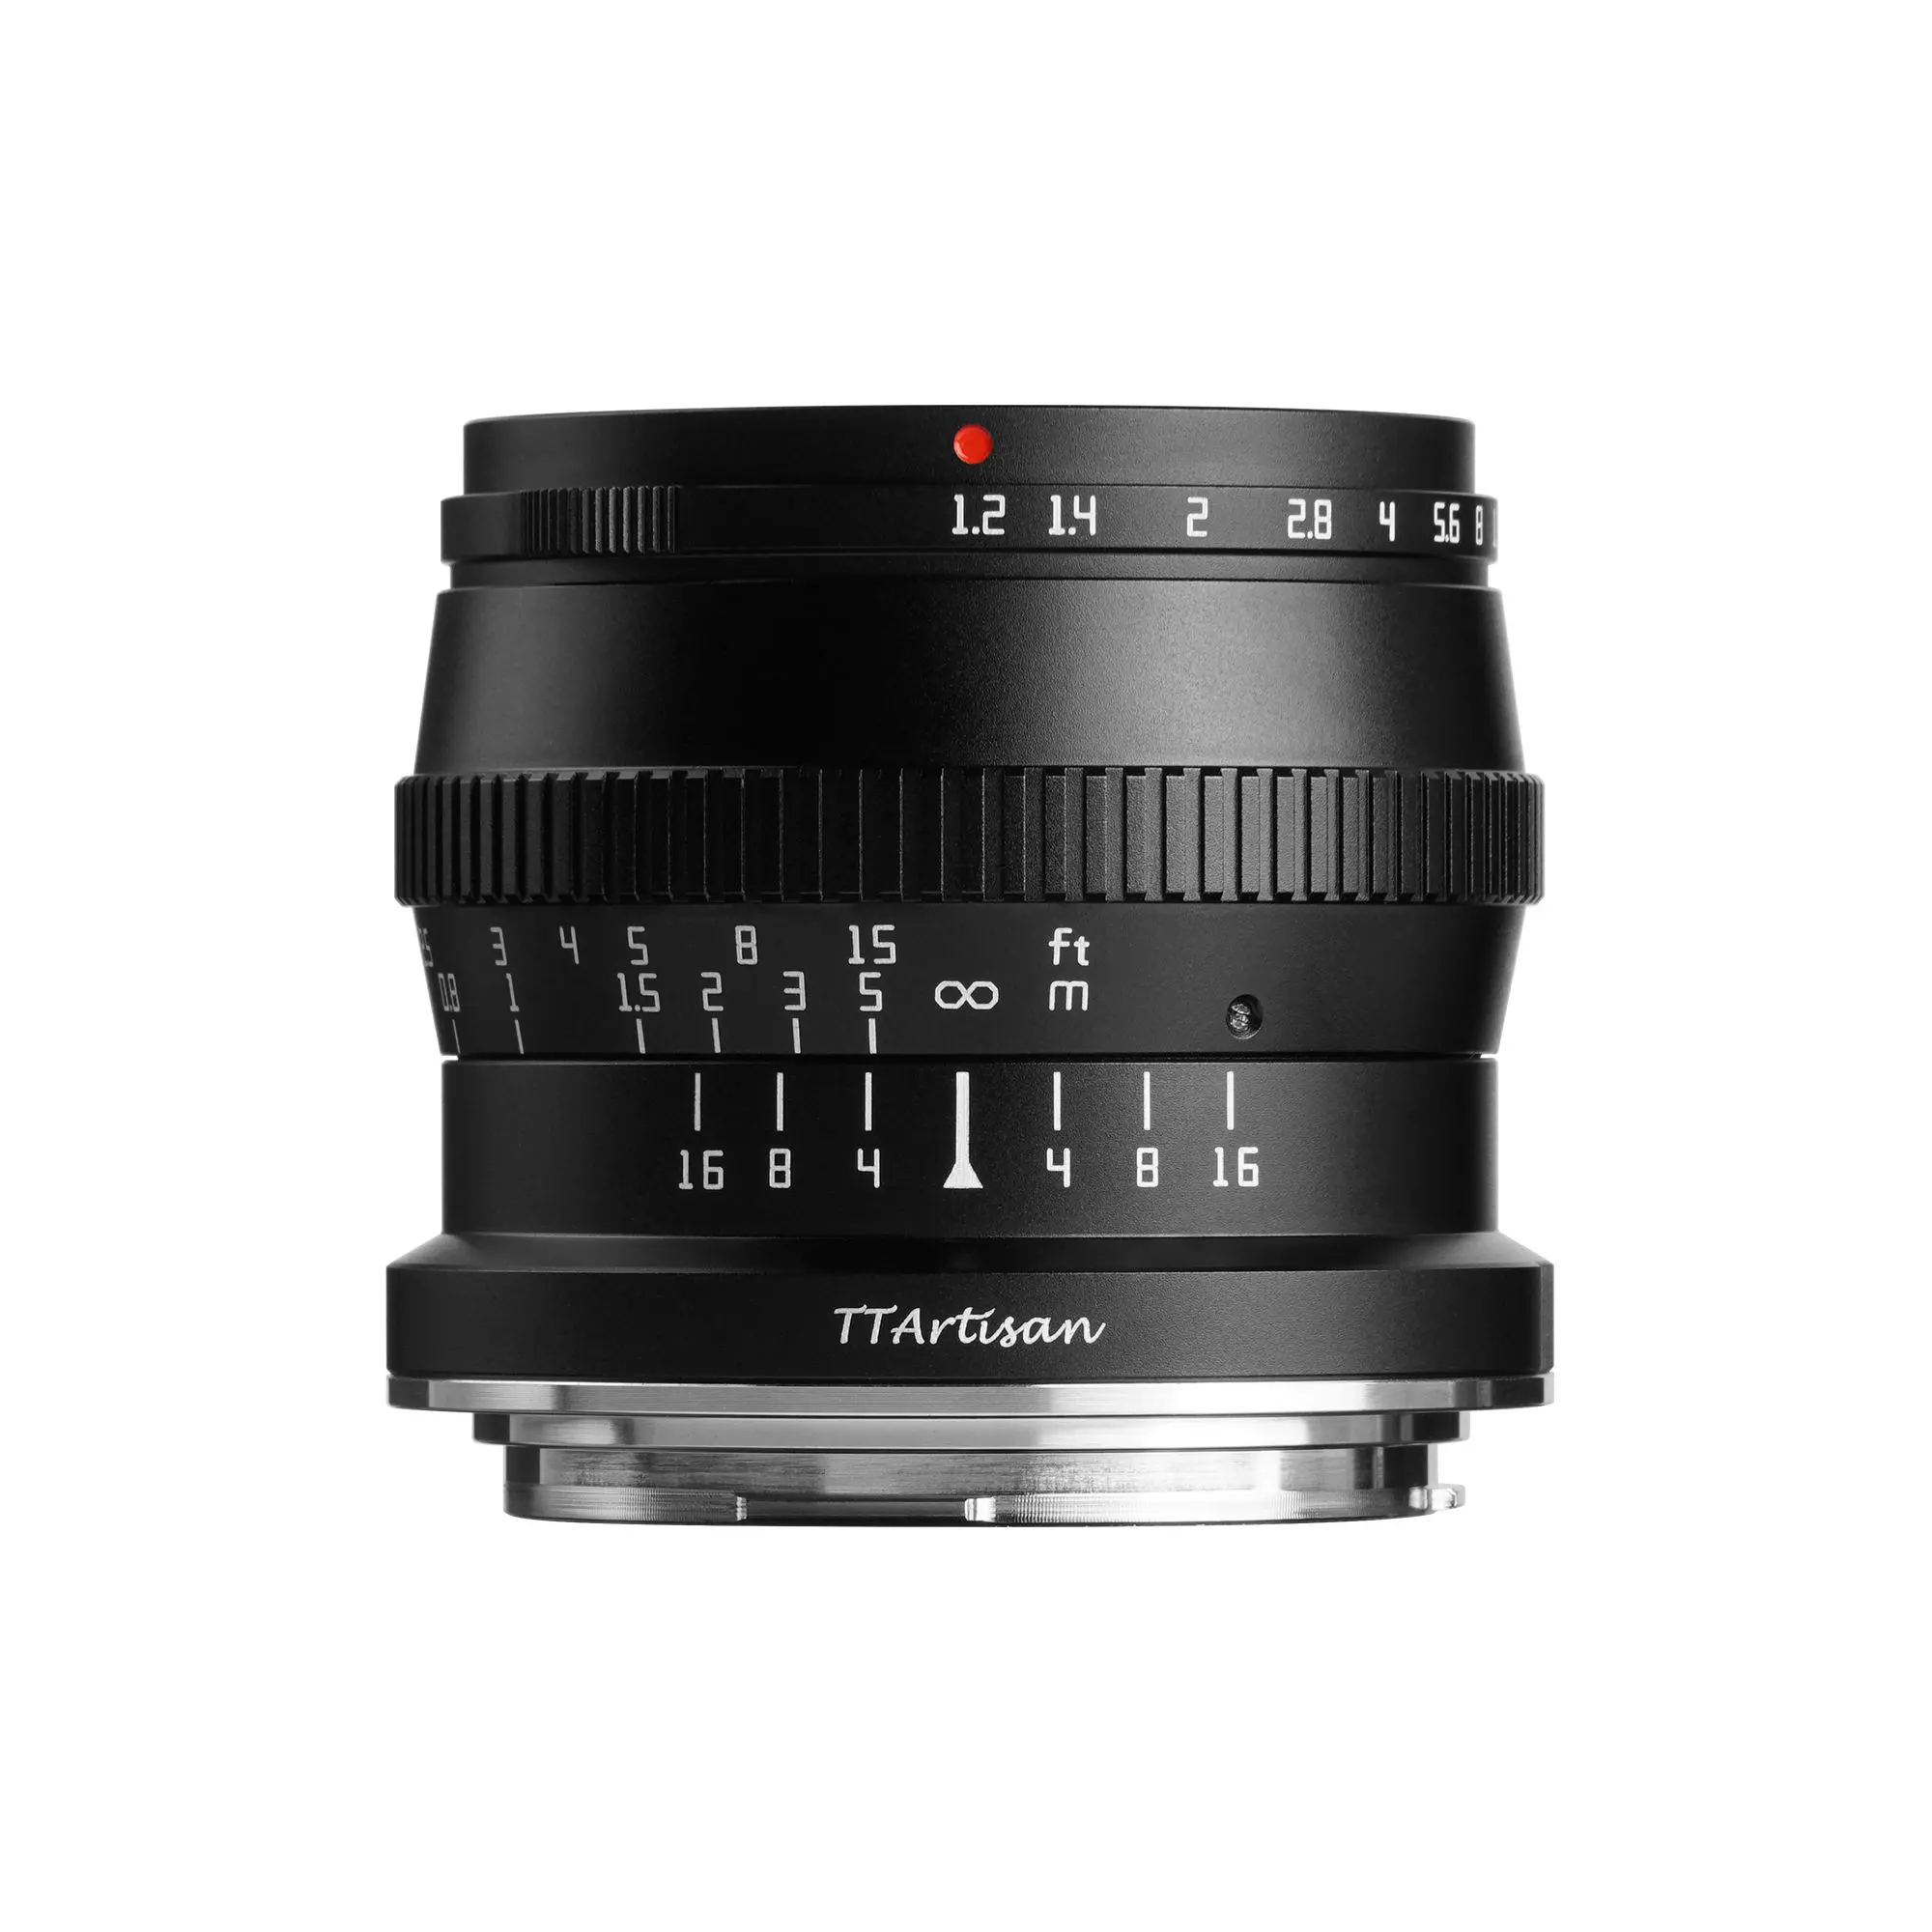 50mm f1.2 Large Aperture Fixed Focus Microsingle Lens for Fujifilm Canon E Mount m43a6000